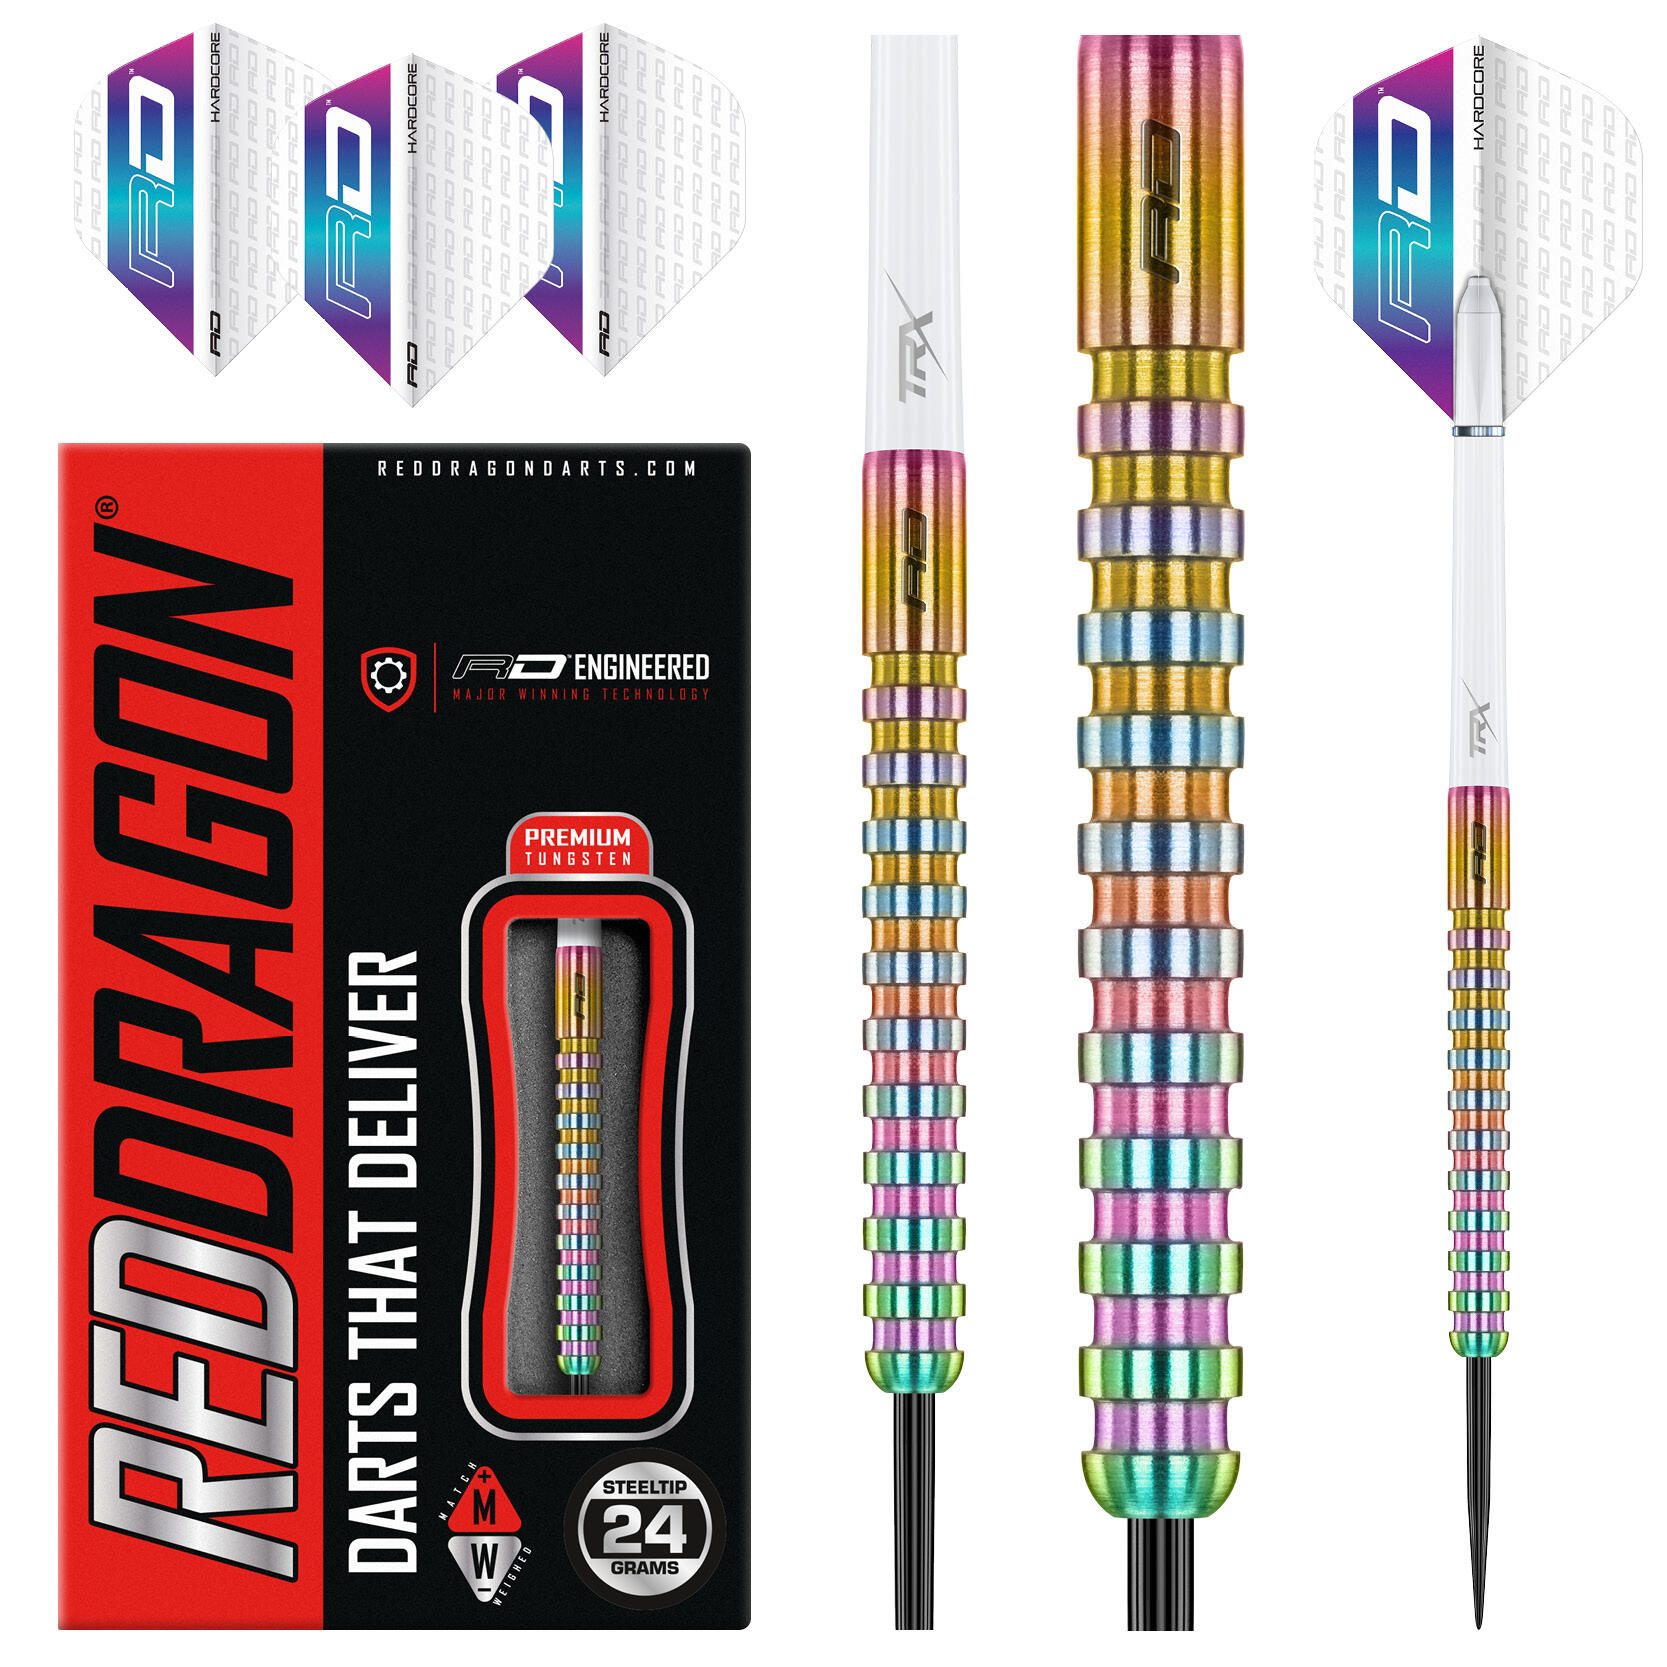 Javelin Spectron 24 Gram Premium Tungsten Darts Set with Flights & Stems 5/7